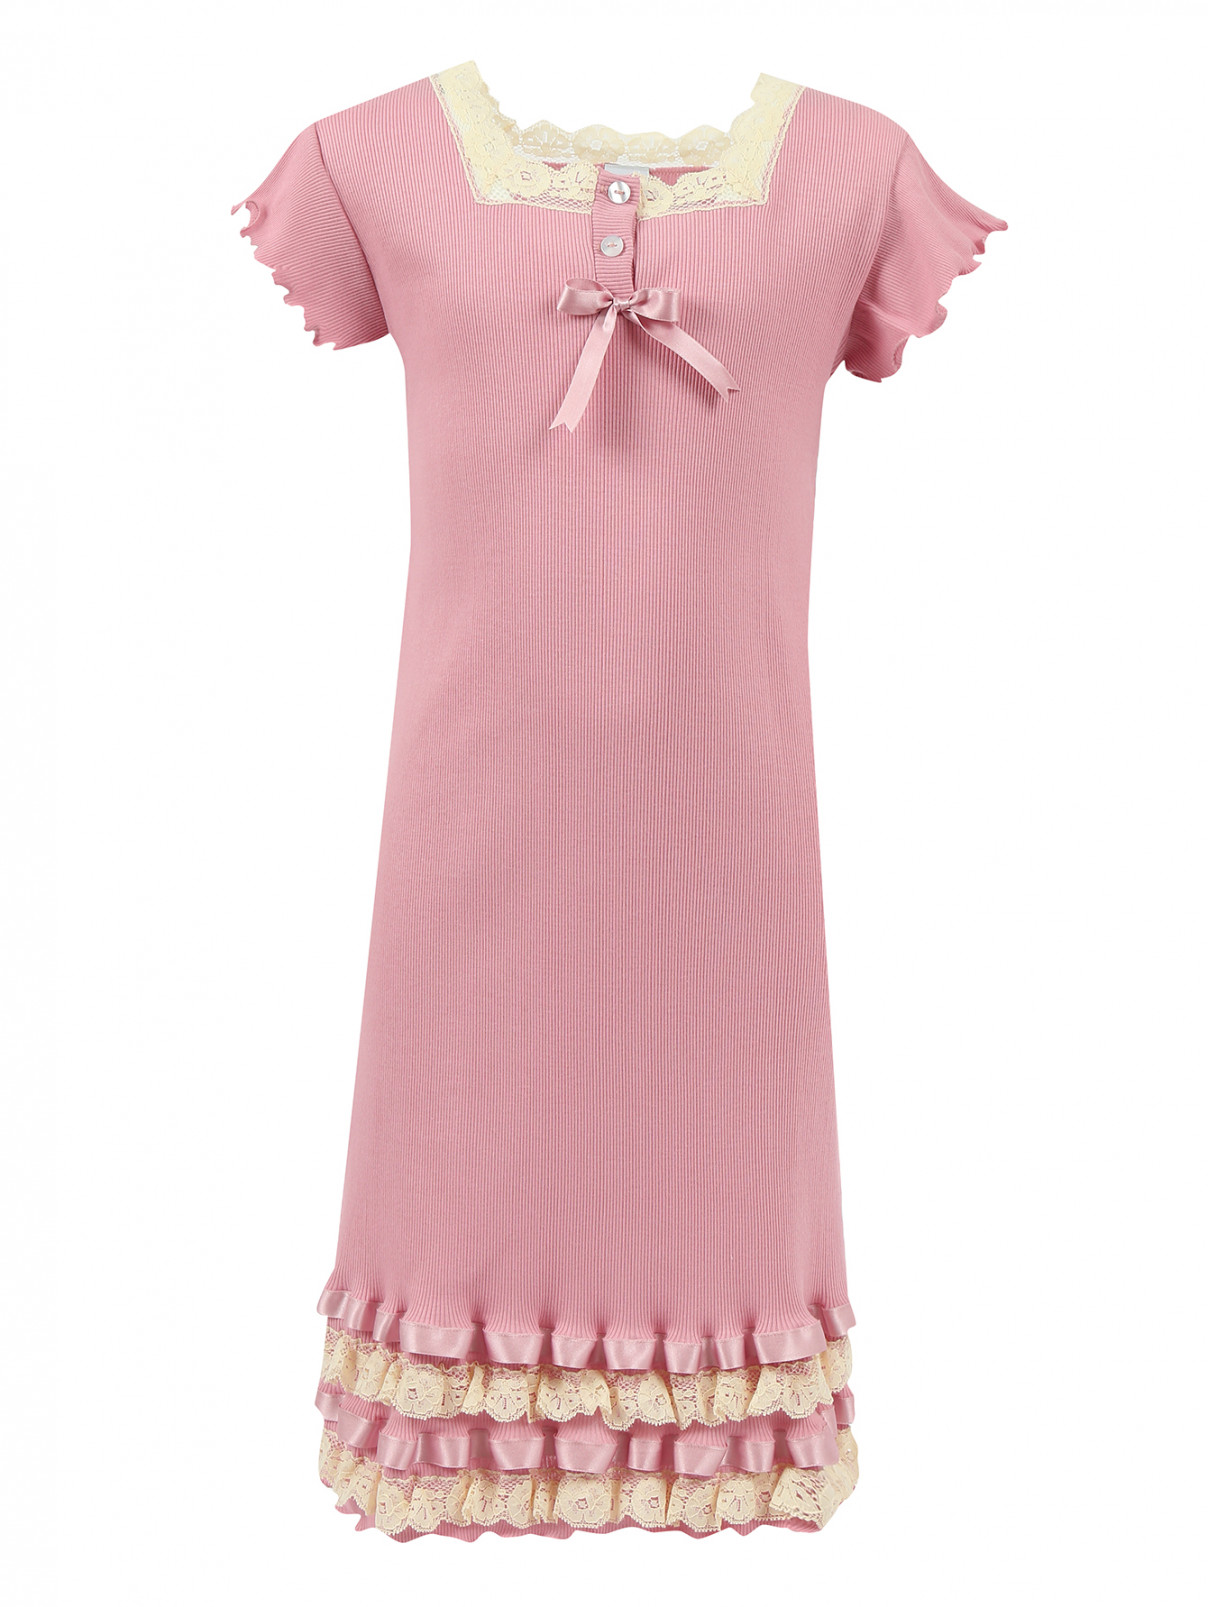 Сорочка из хлопка декорированная кружевом и атласными лентами Giottino  –  Общий вид  – Цвет:  Розовый